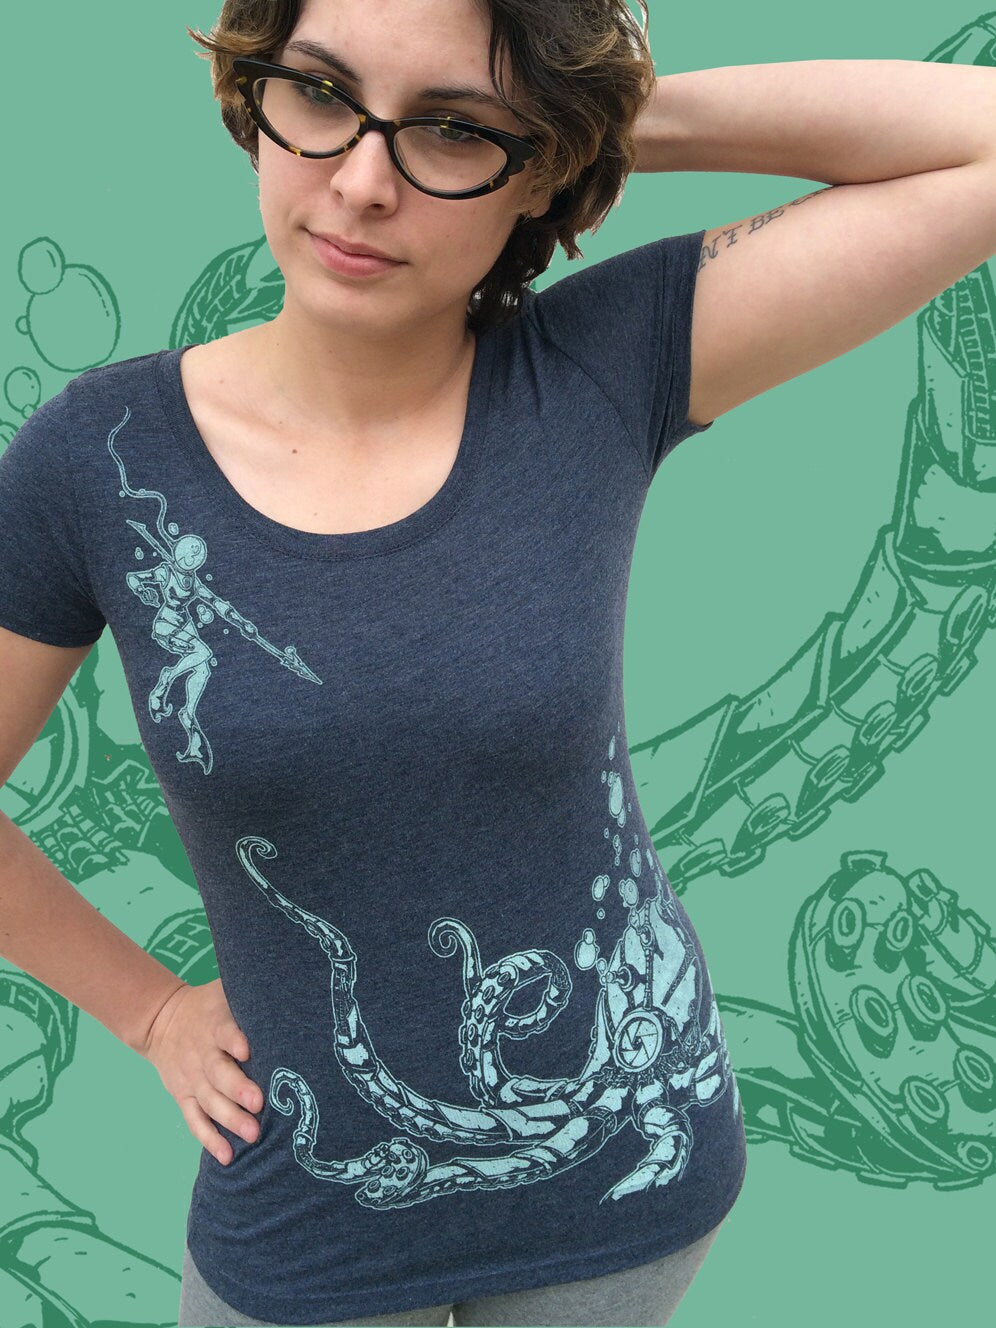 Womens Scoop neck Tee - Roboctopus Tshirt - Robot Octopus Tentacle Next Level shirt